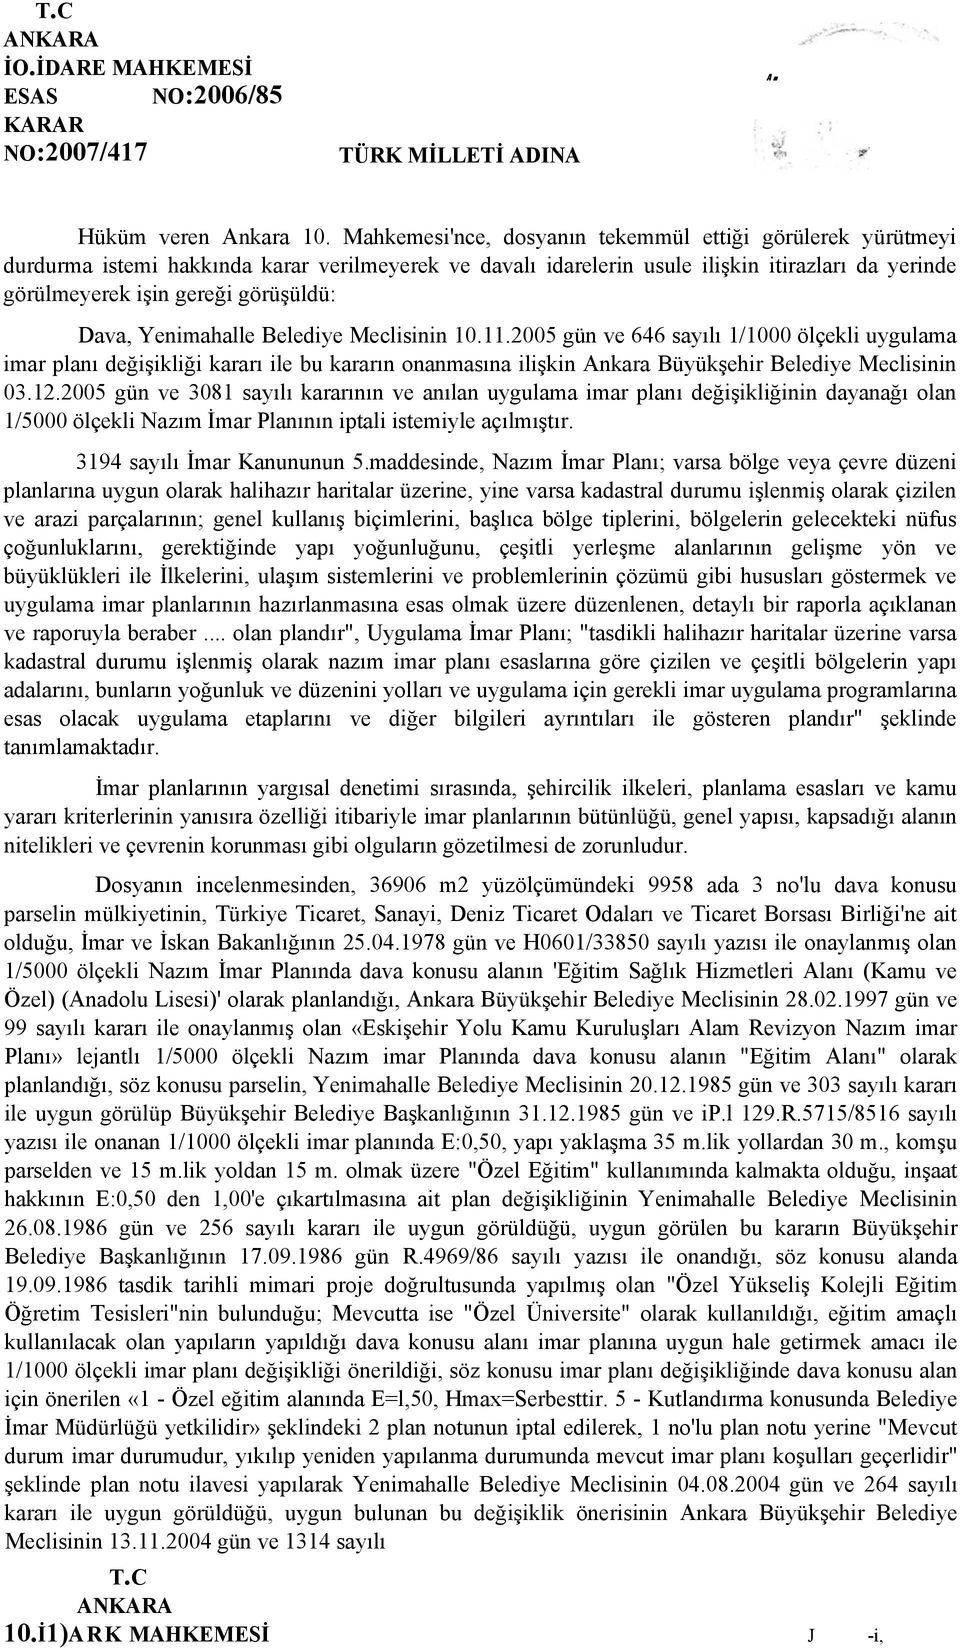 Dava, Yenimahalle Belediye Meclisinin 10.11.2005 gün ve 646 sayılı 1/1000 ölçekli uygulama imar planı değişikliği kararı ile bu kararın onanmasına ilişkin Ankara Büyükşehir Belediye Meclisinin 03.12.